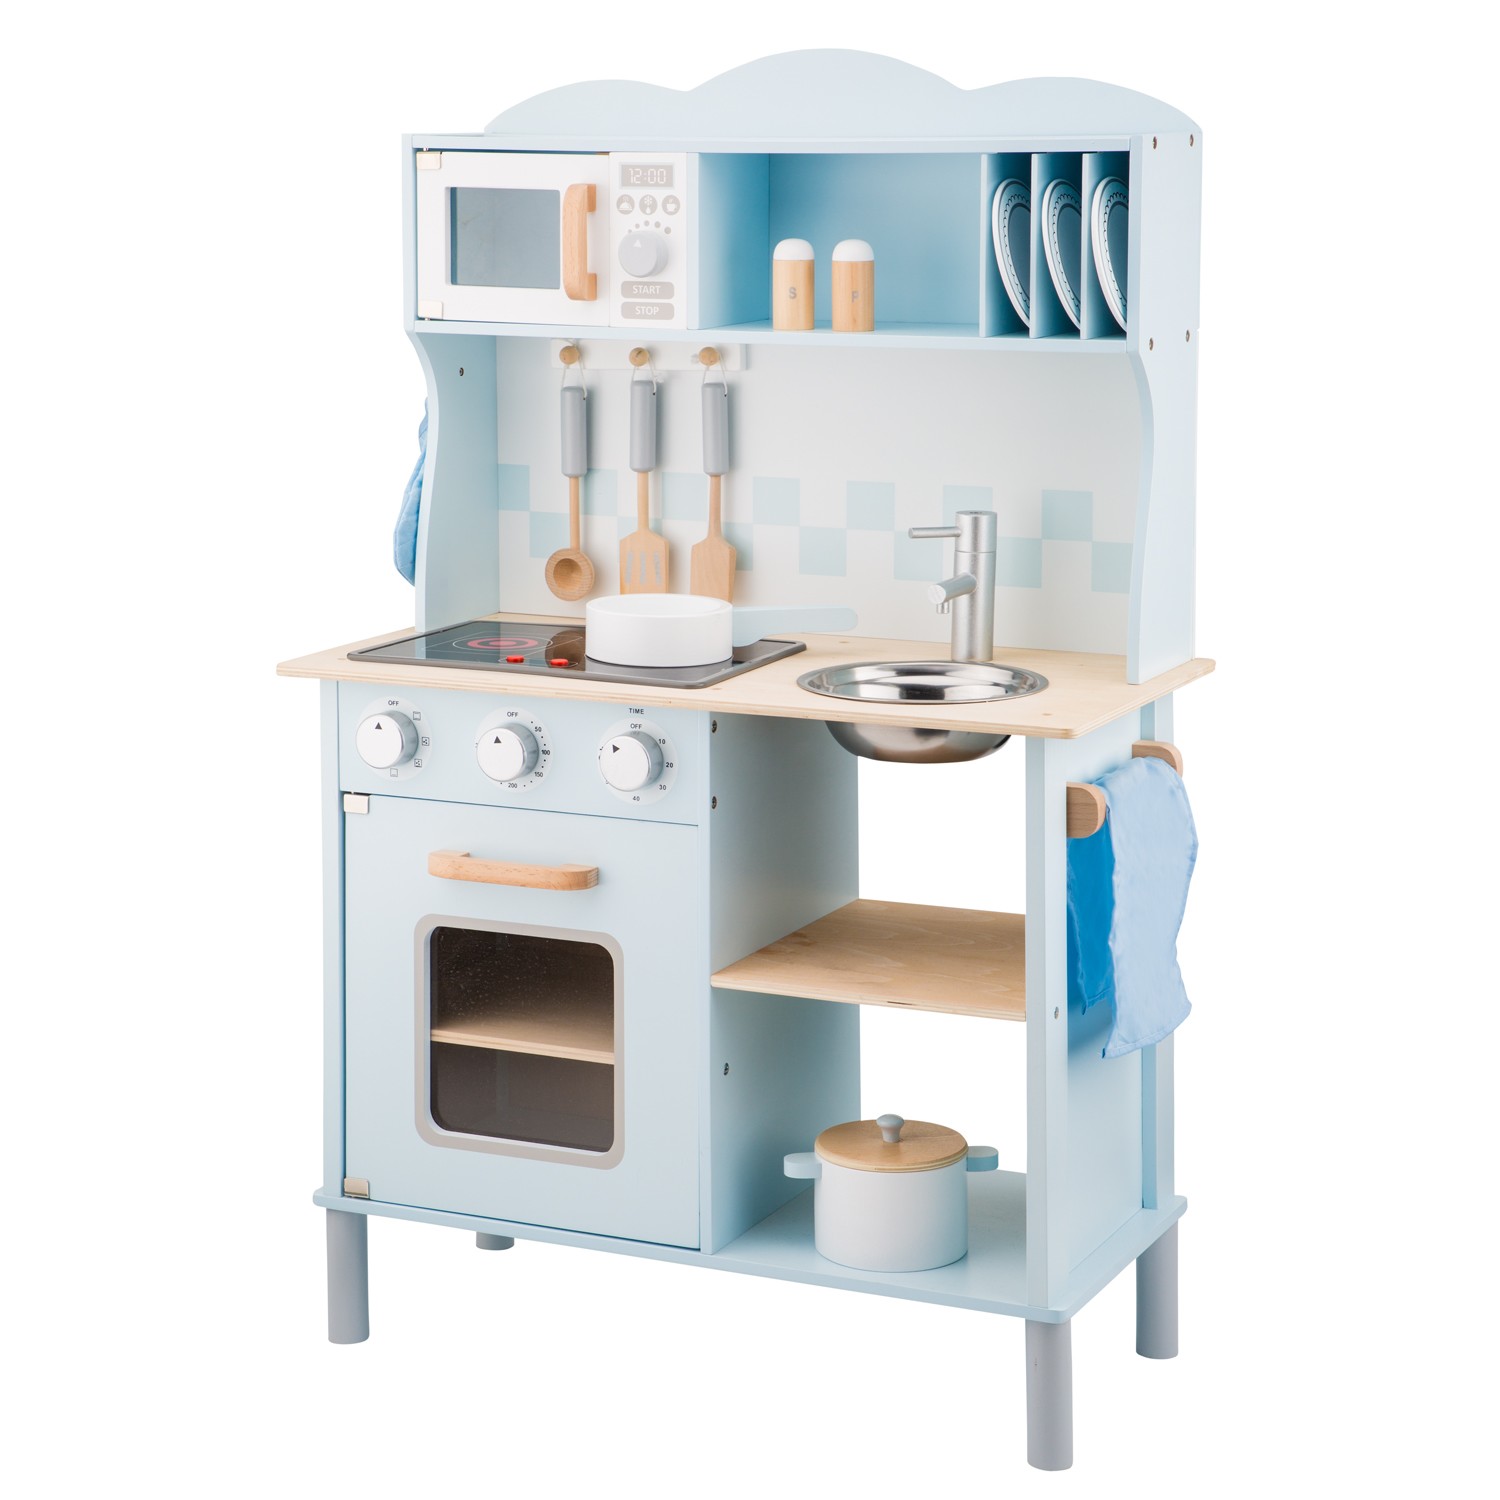 slinger Vegetatie Brood Kinderkeuken - modern - inclusief elektrische kookplaat - blauw | New C